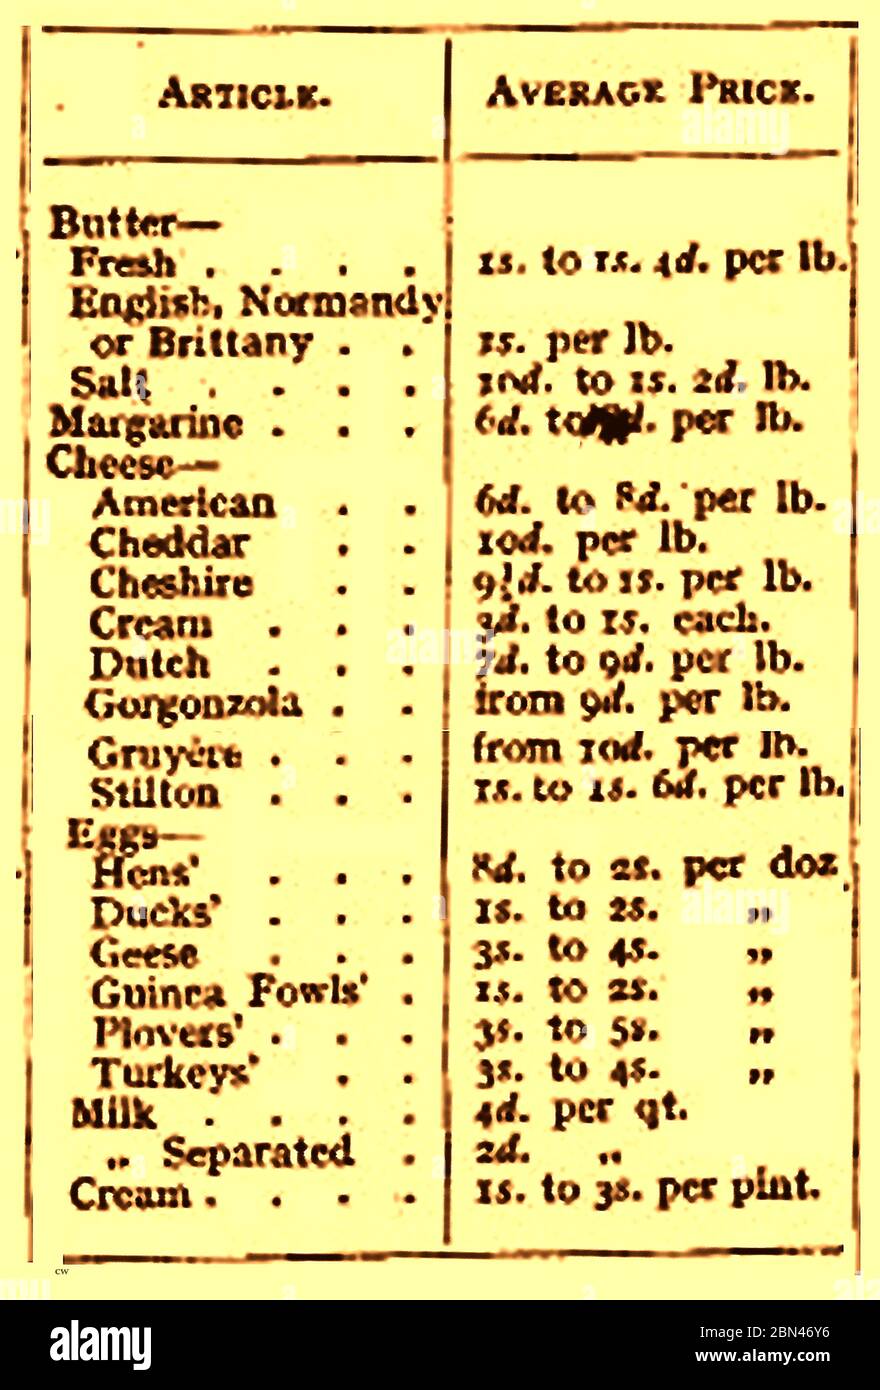 Molkereiindustrie in Großbritannien - 1861 - EINE Liste von Milchprodukten, Eiern und deren britischen Preisen - von einem Lebensmittelhandel Magazin der Zeit. Stockfoto